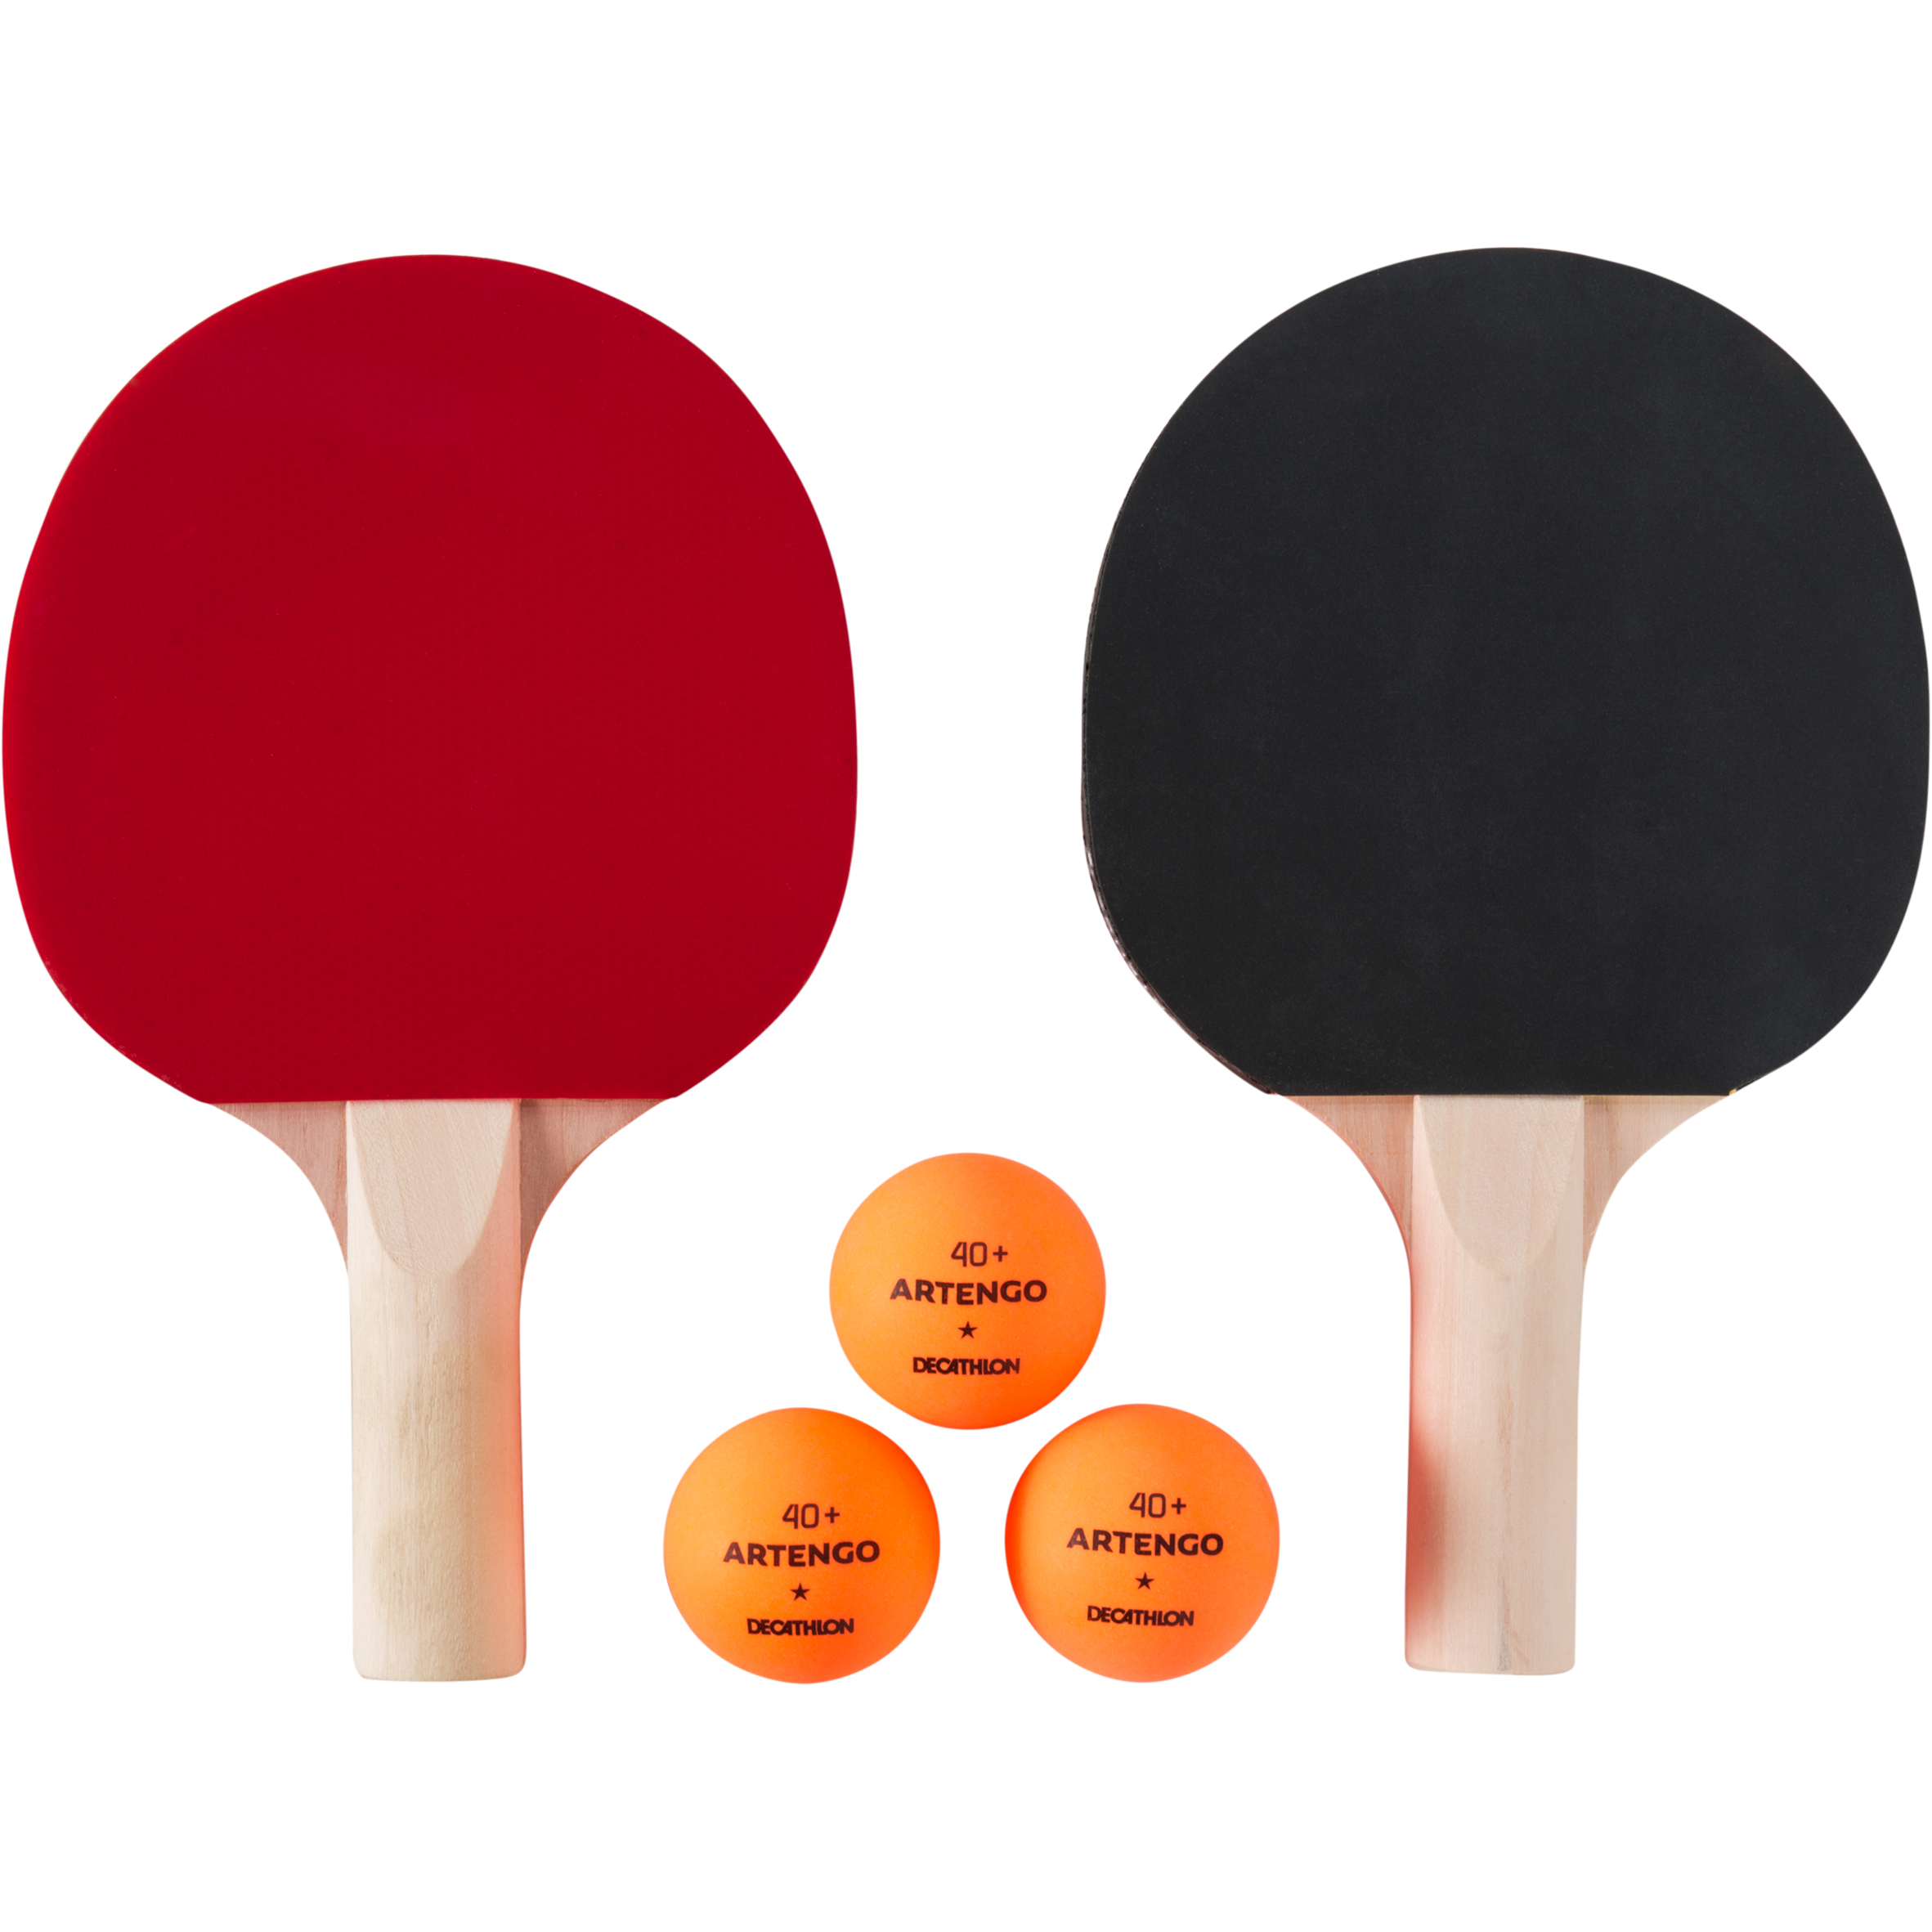 La raquette de ping-pong : astuces pour l'entretenir et la faire durer